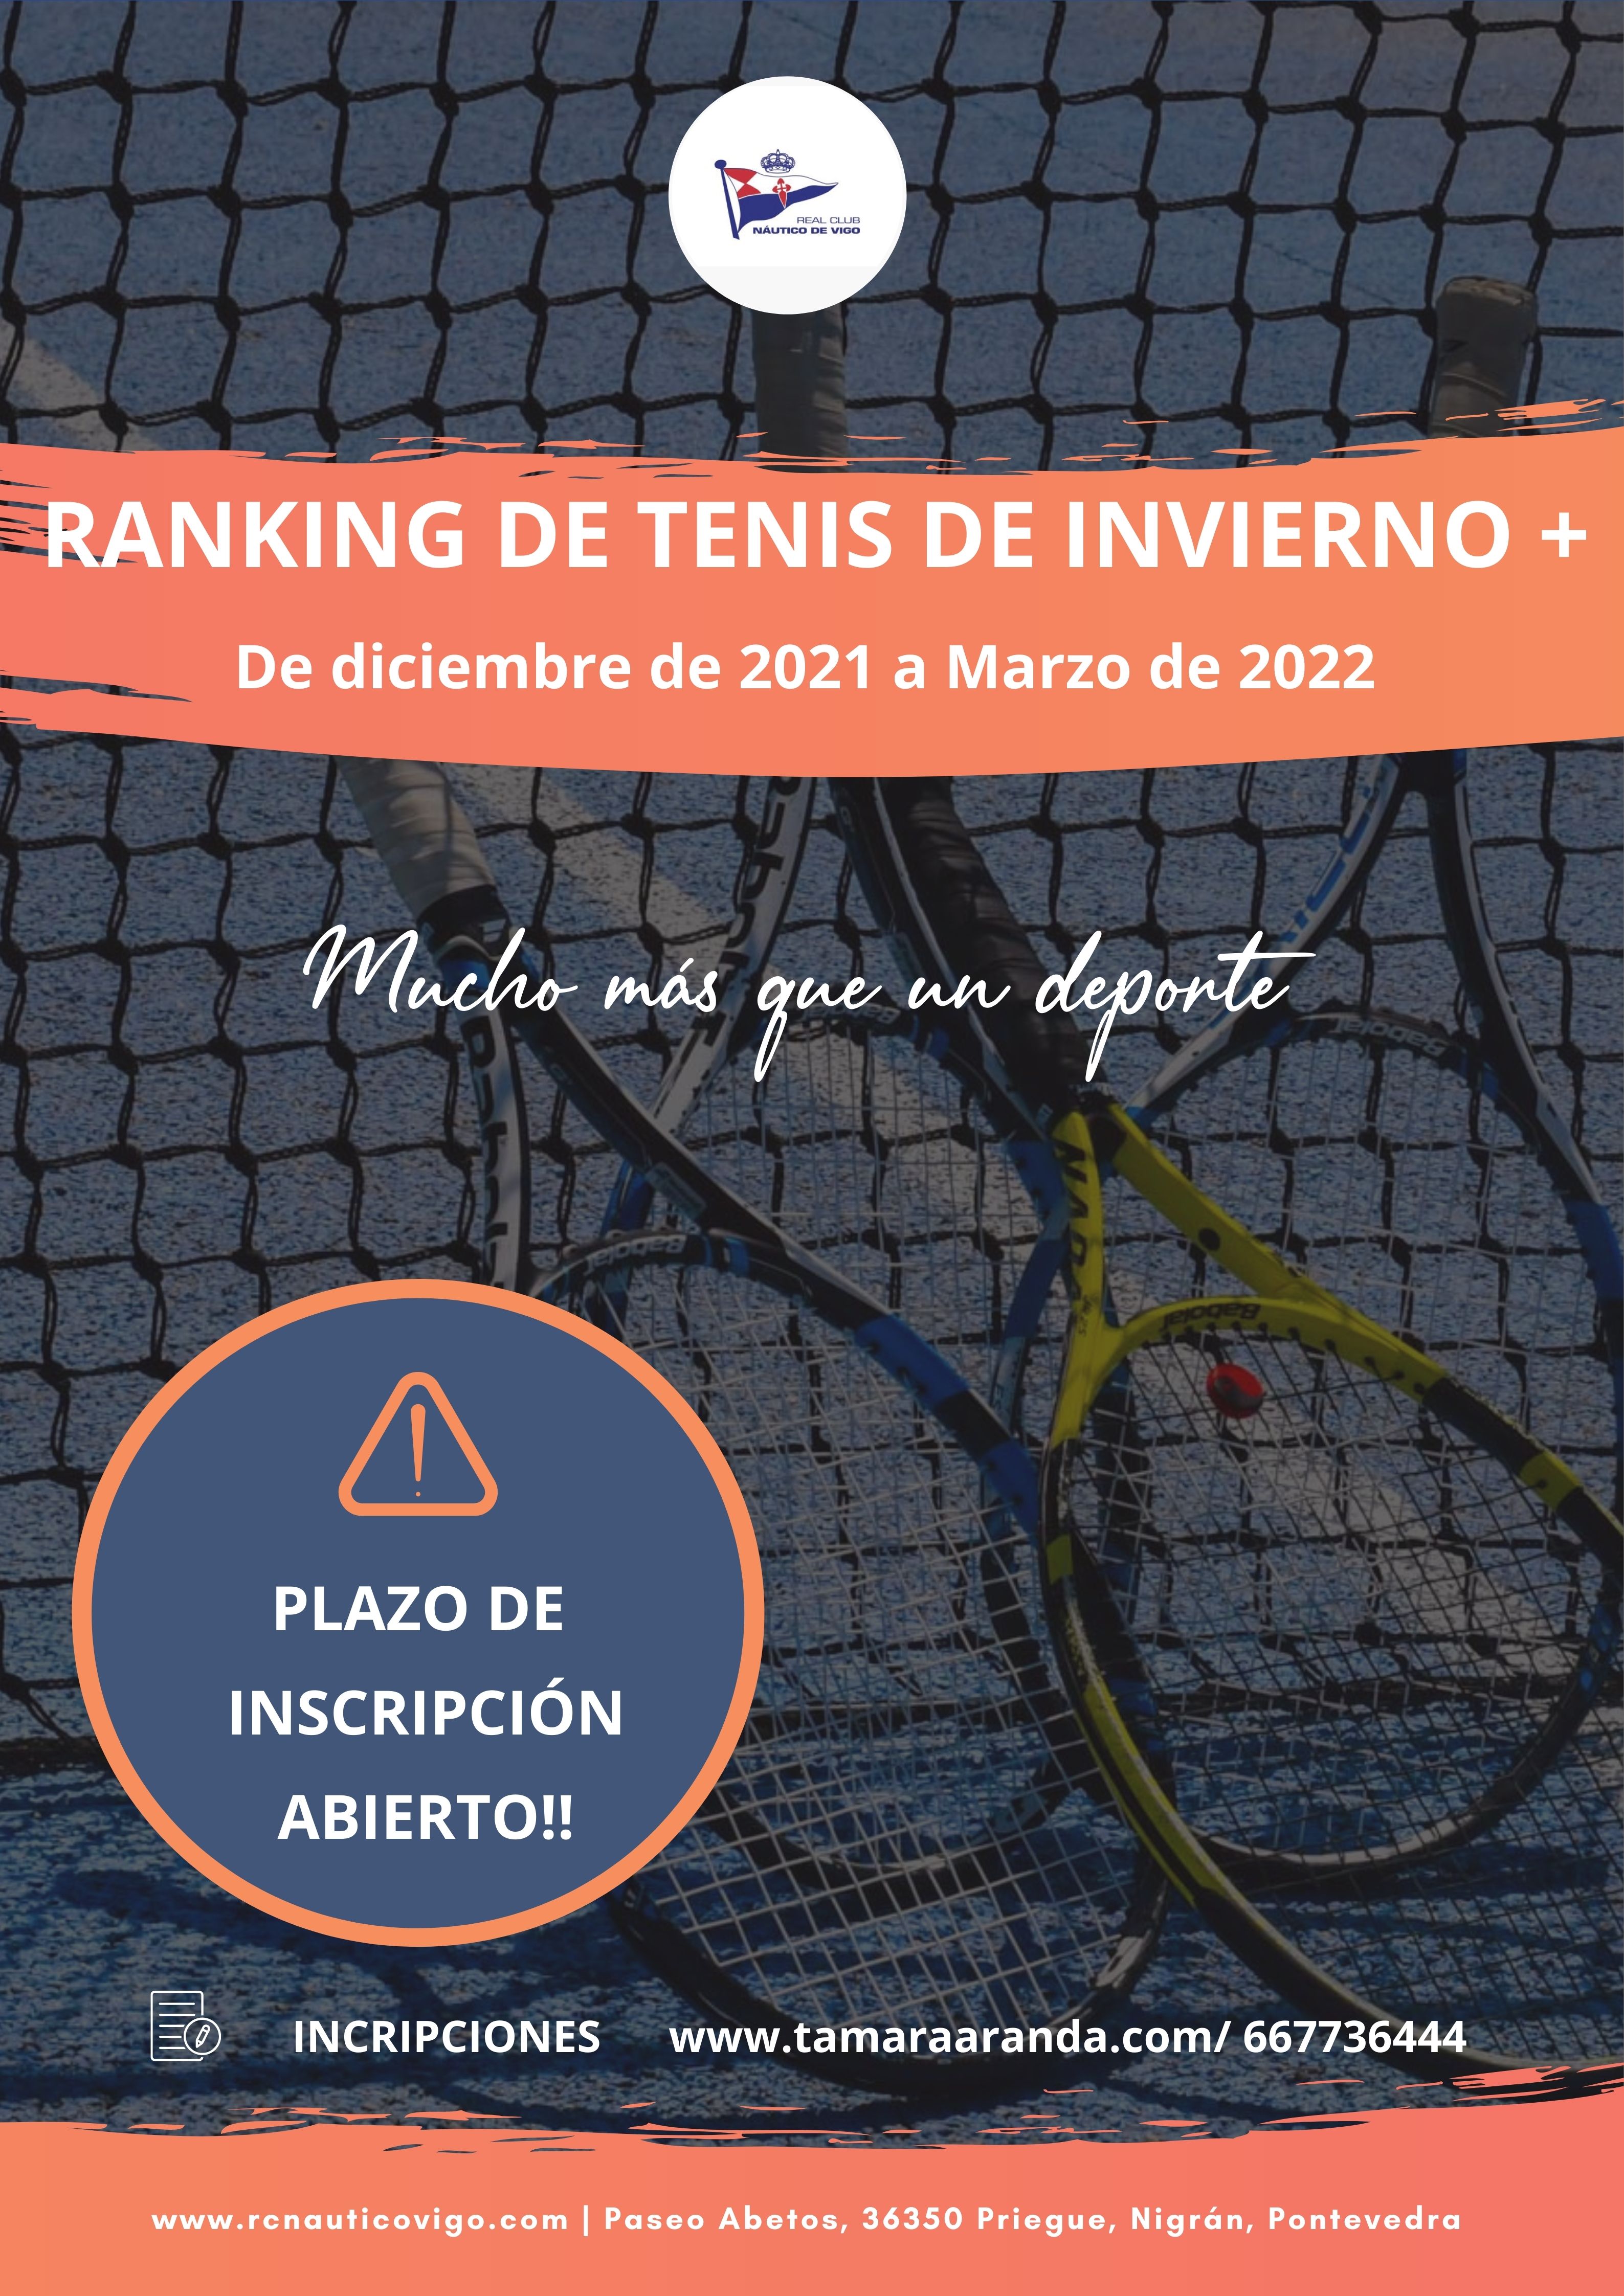 RANKING DE TENIS DE INVIERNO 2021 2022 EN EL RCNV